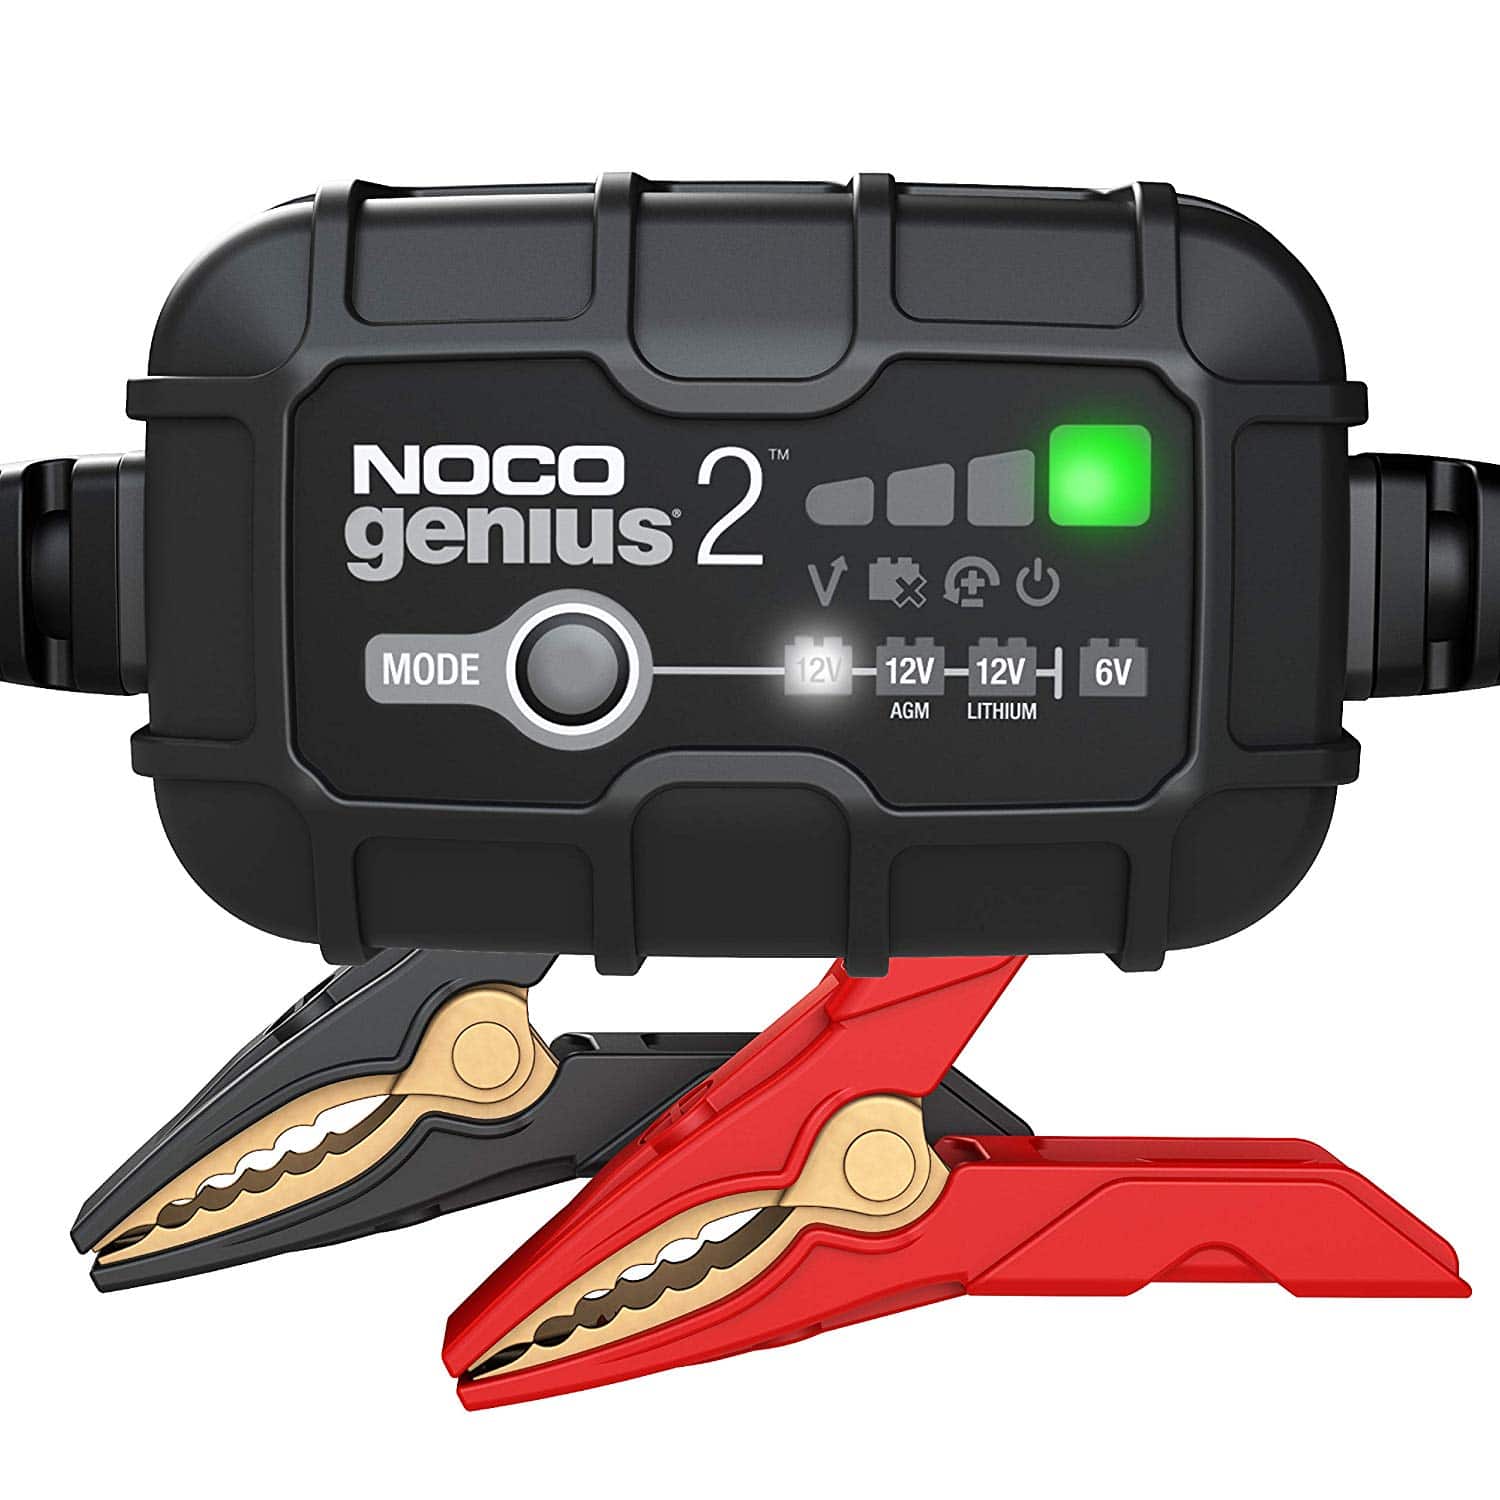 Le nouveau chargeur de batterie NOCO GENIUS 2 - Fiche produit